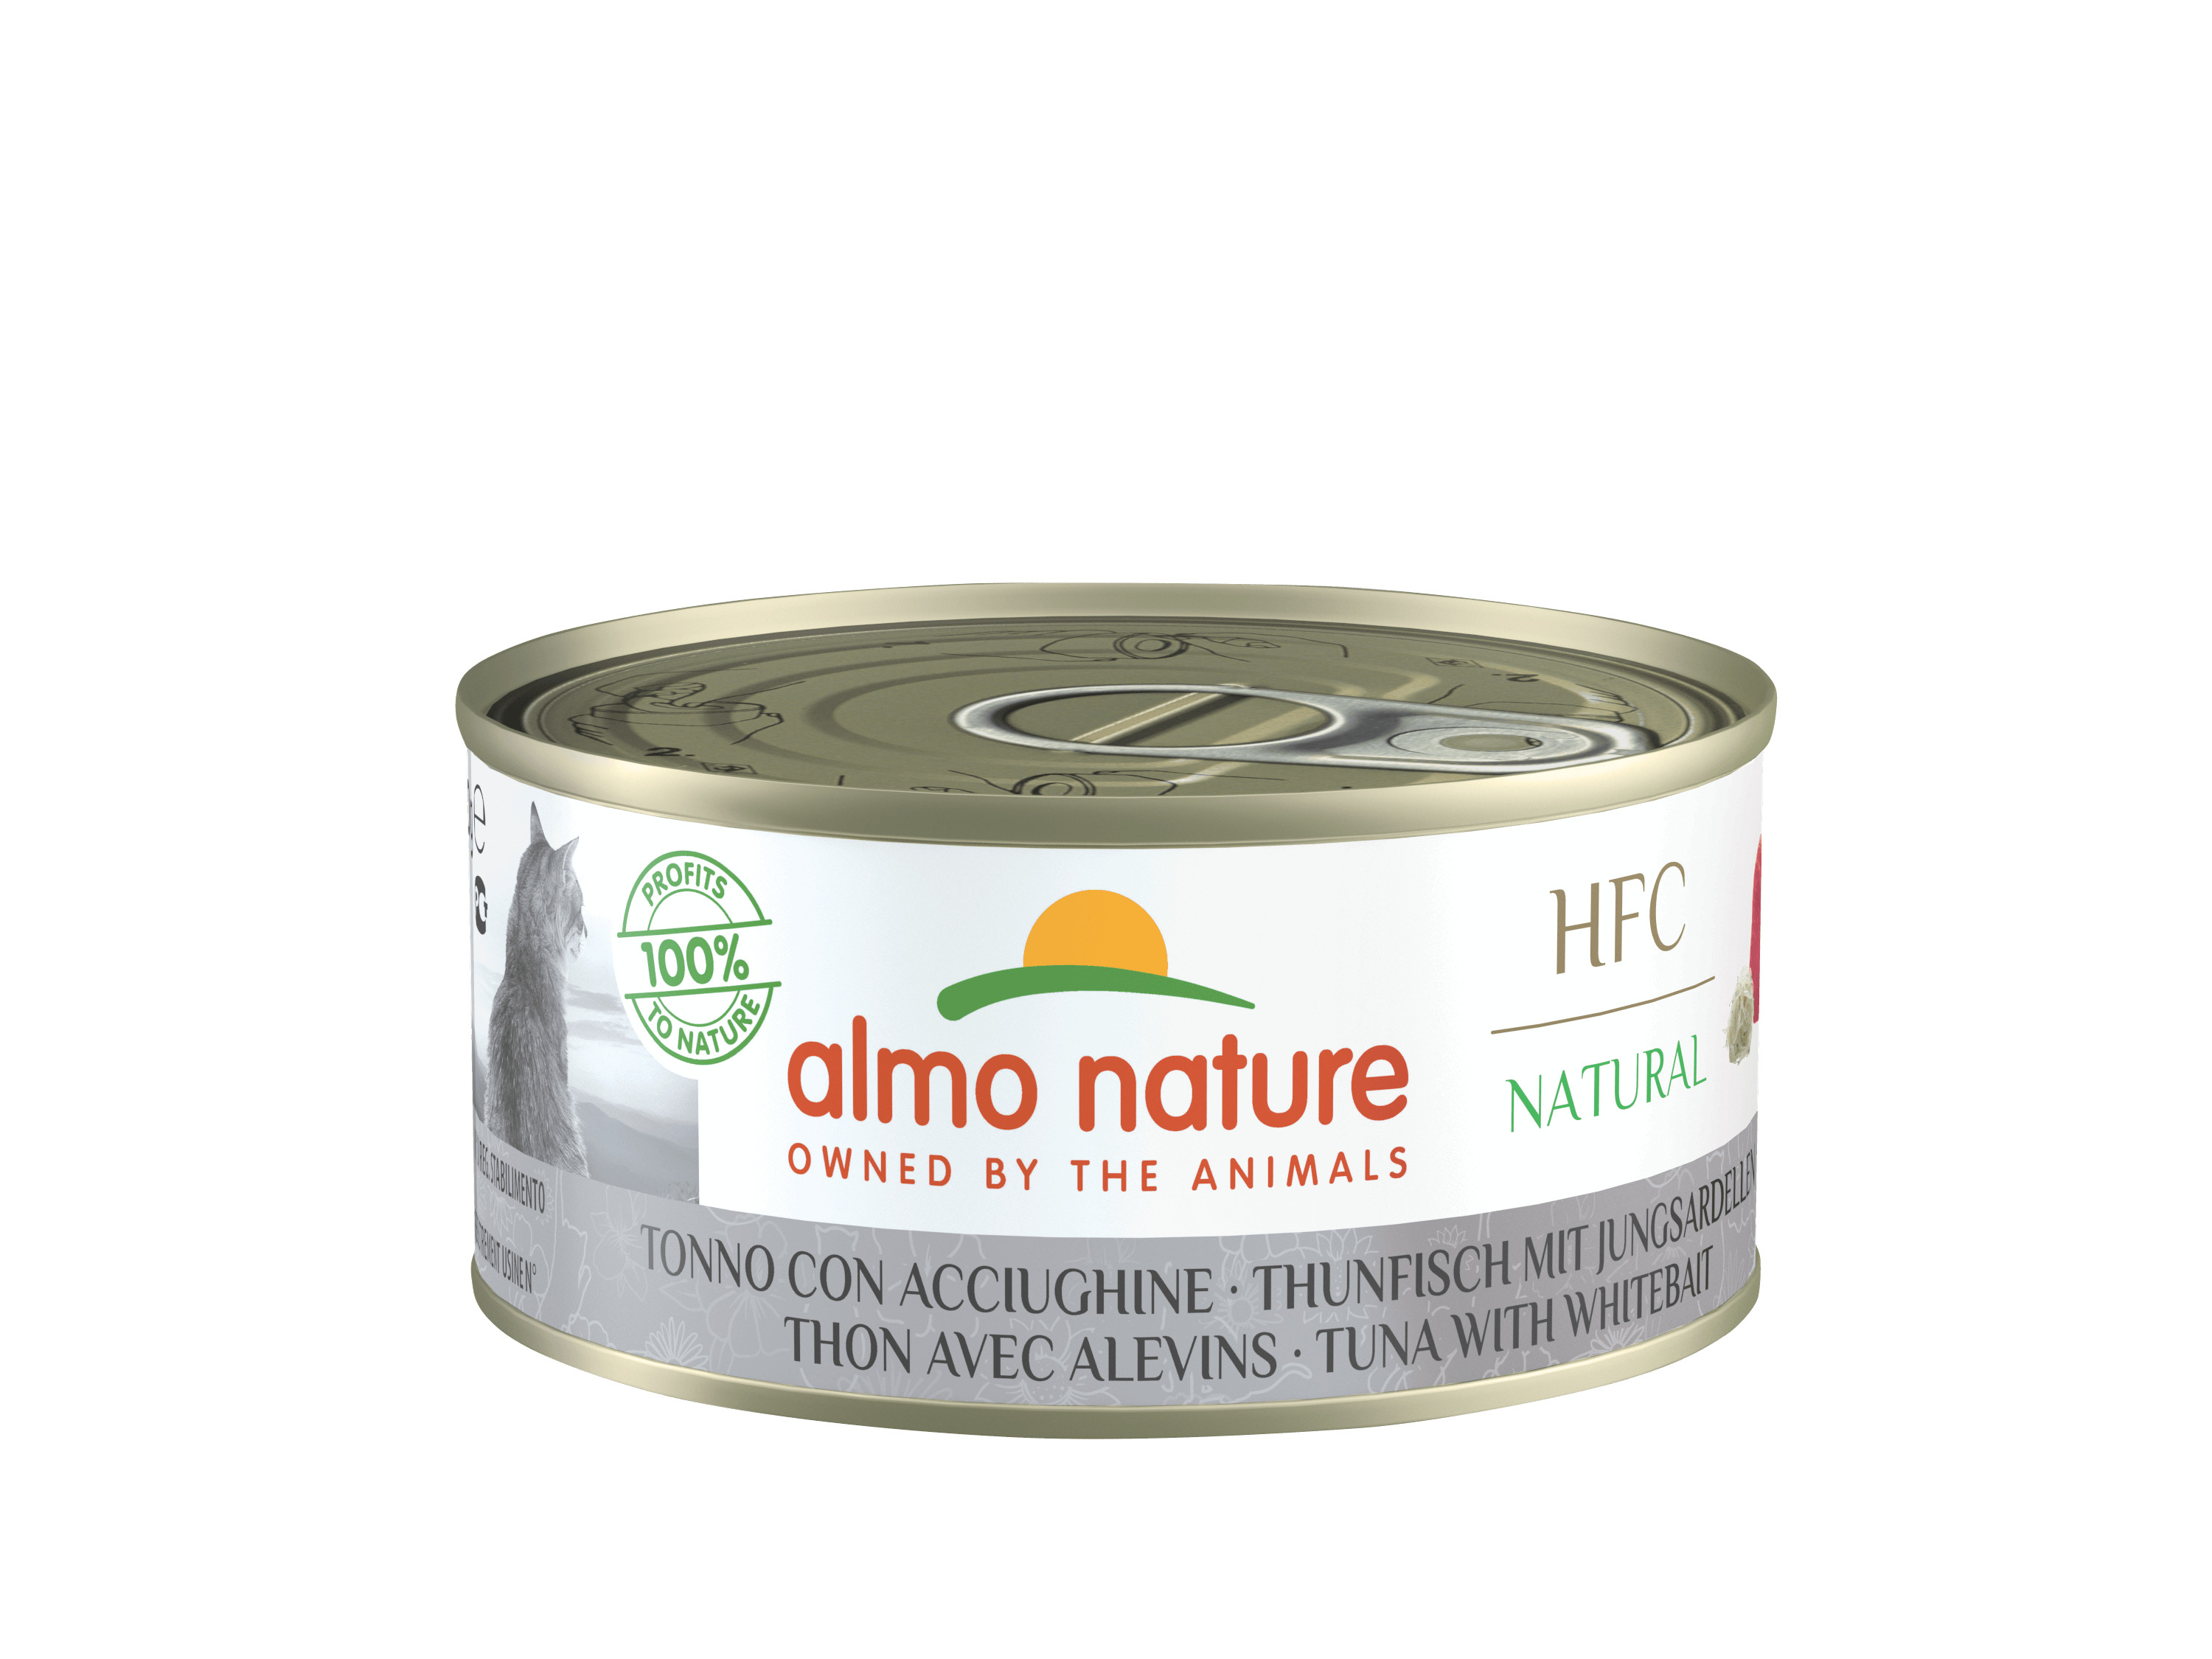 Almo Nature HFC Natural tonijn met jonge ansjovis (150 g)